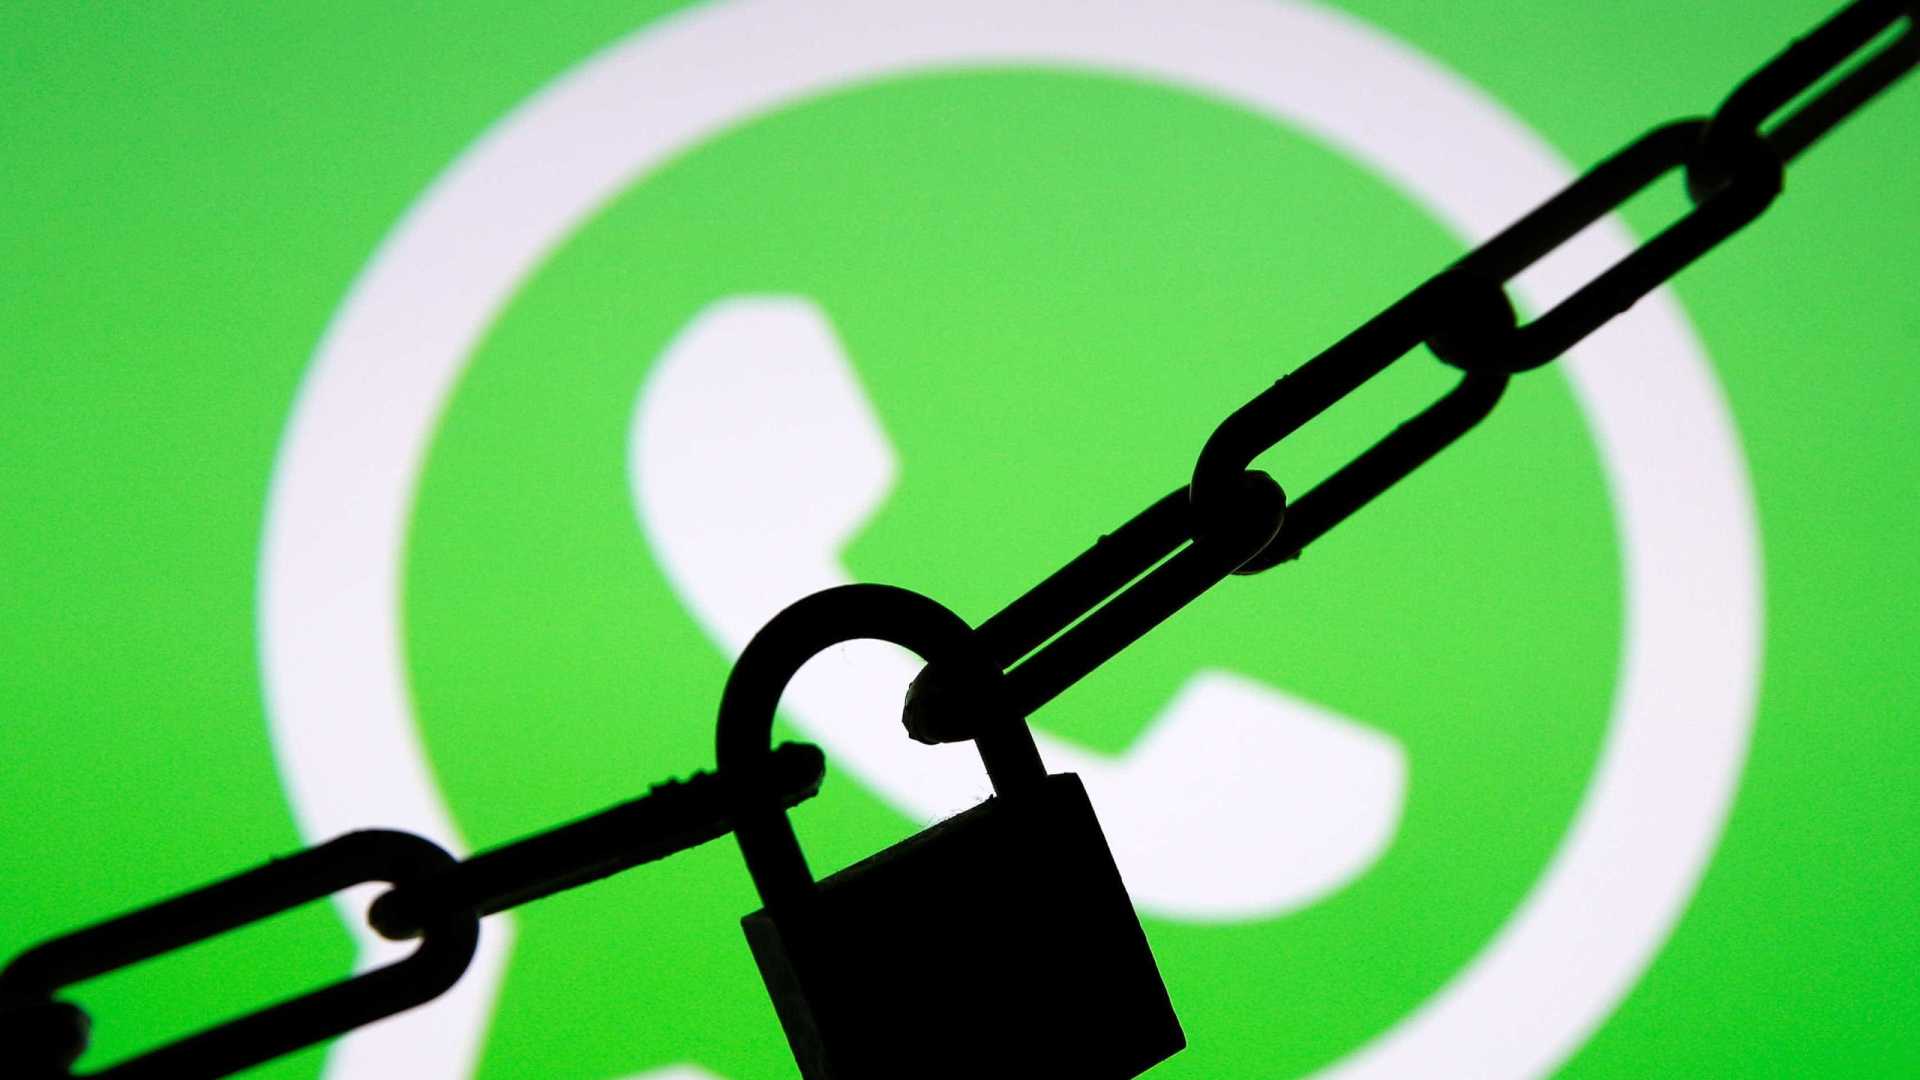 Novo golpe no WhatsApp divulga promoção falsa da marca O Boticário